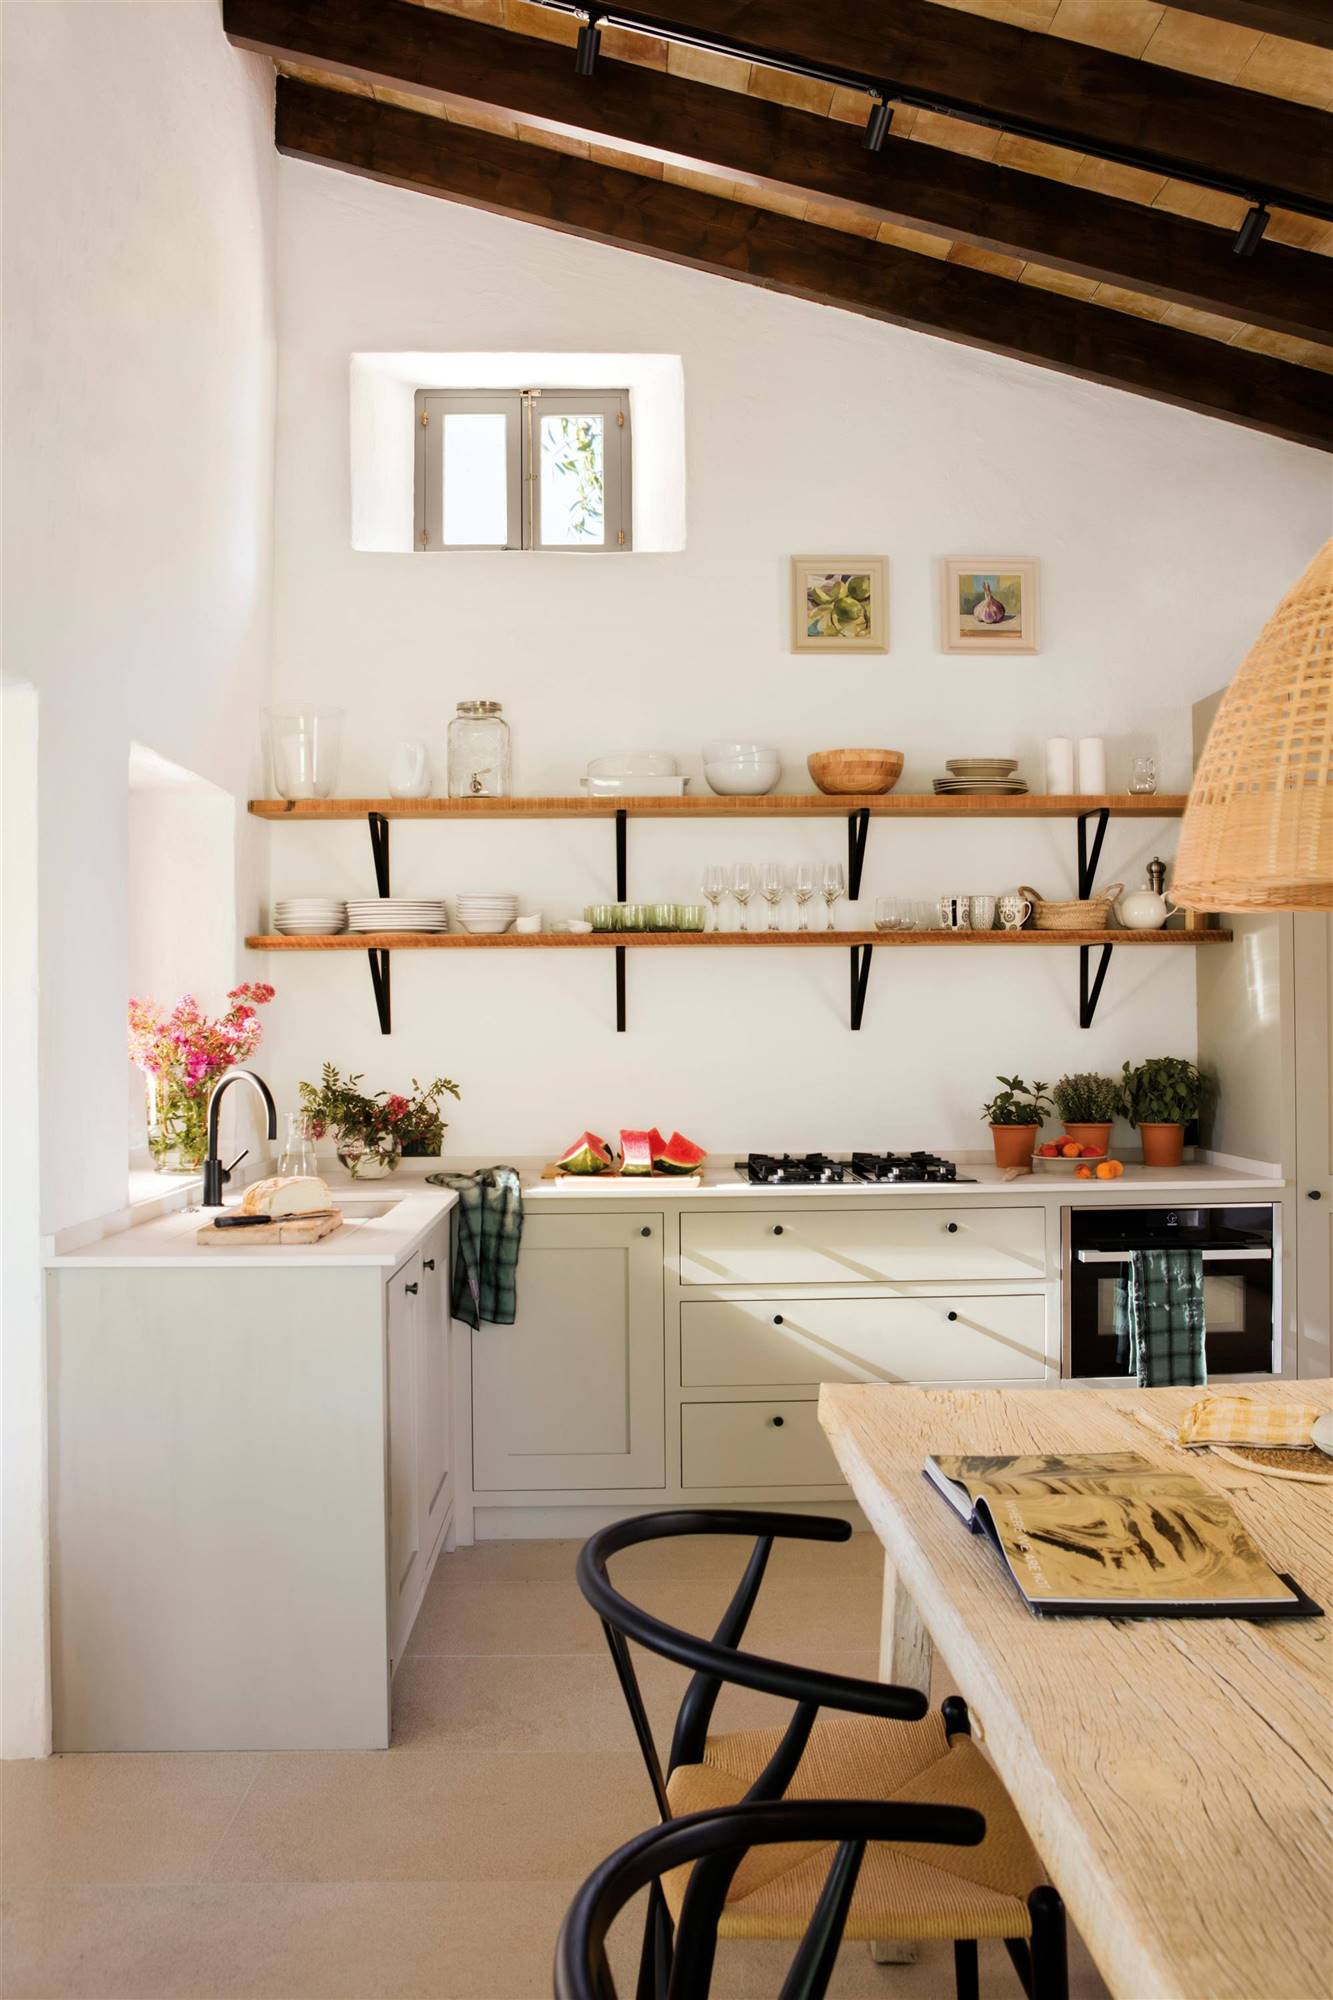 Una cocina de estilo rústico con muebles blancos y estantes de madera con escuadras. 